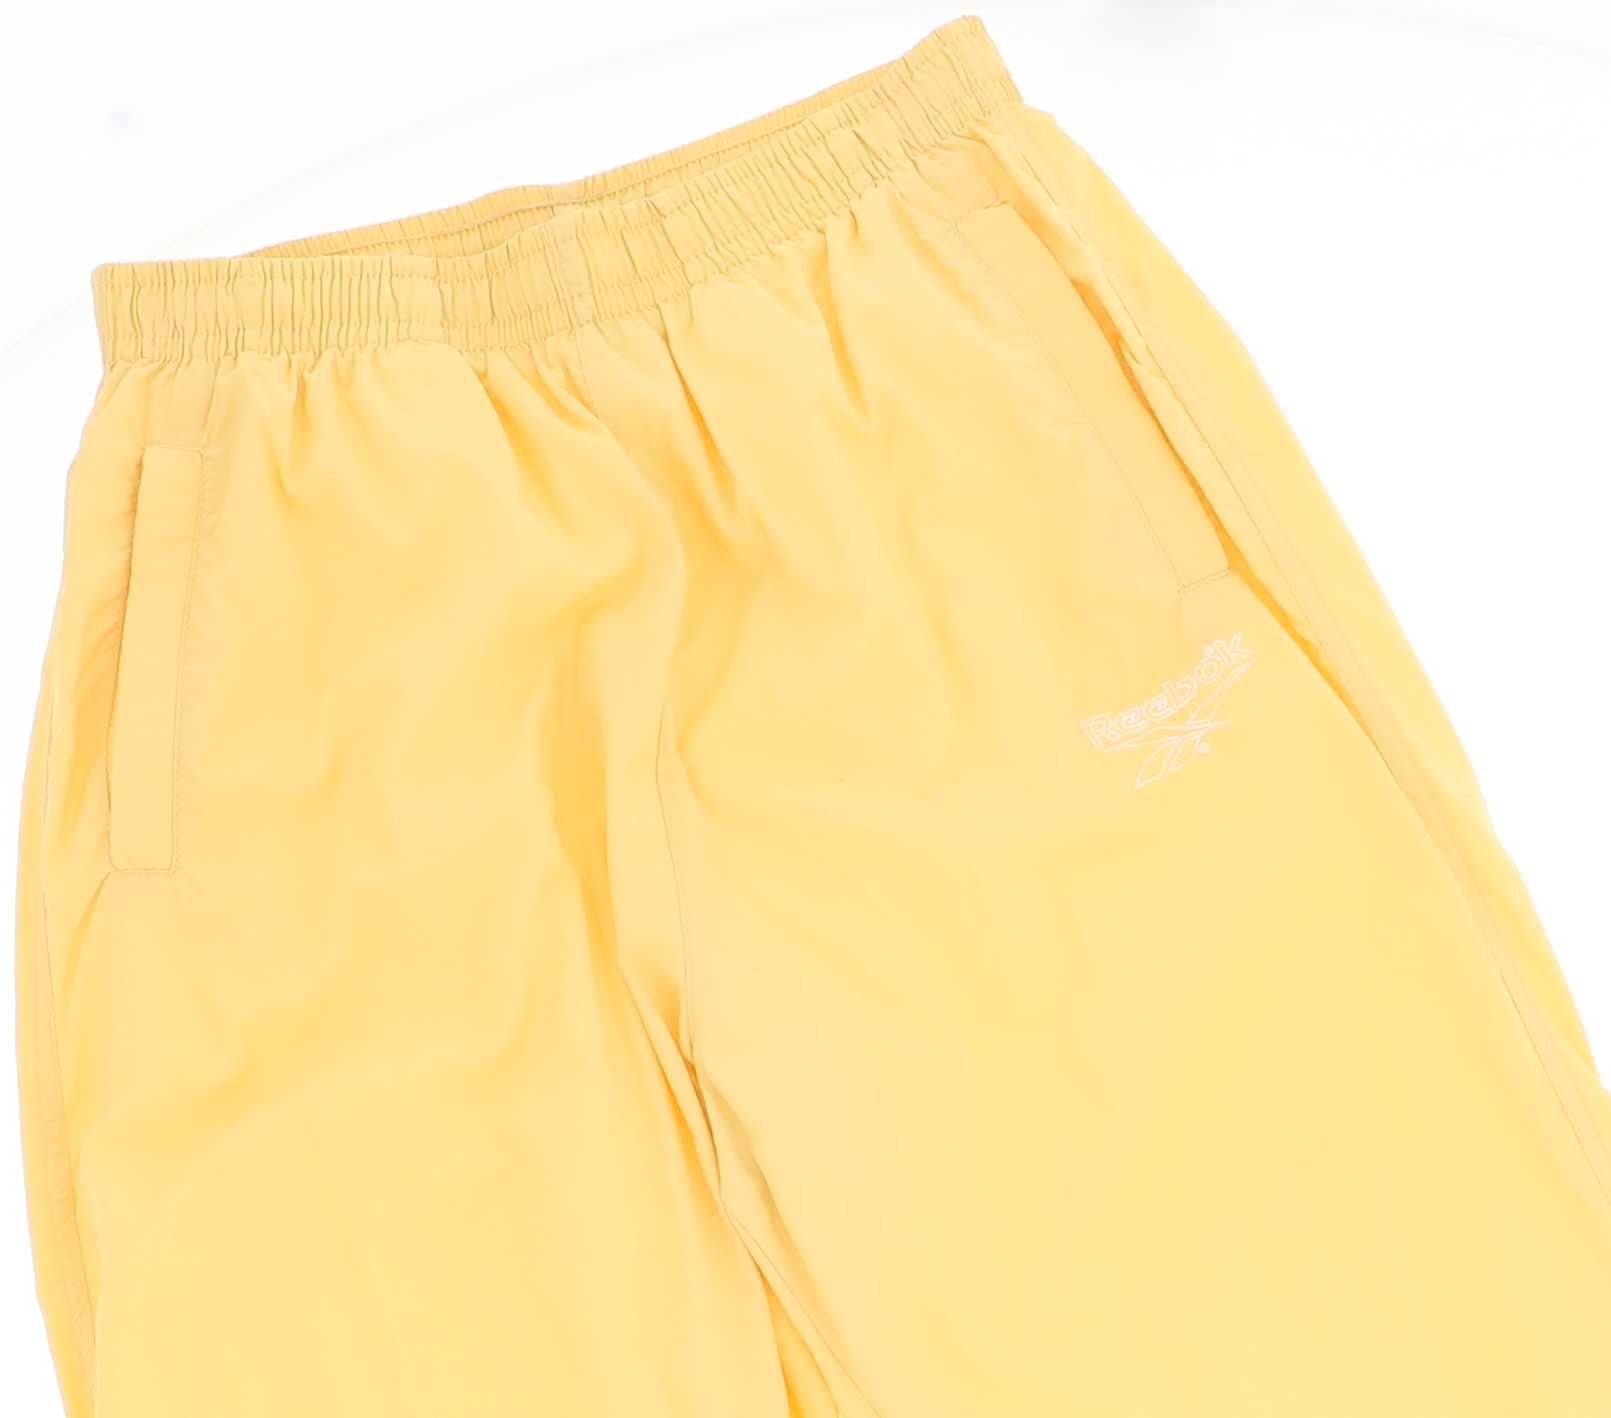 Żółte spodnie sportowe marki Reebok, rozmiar 40